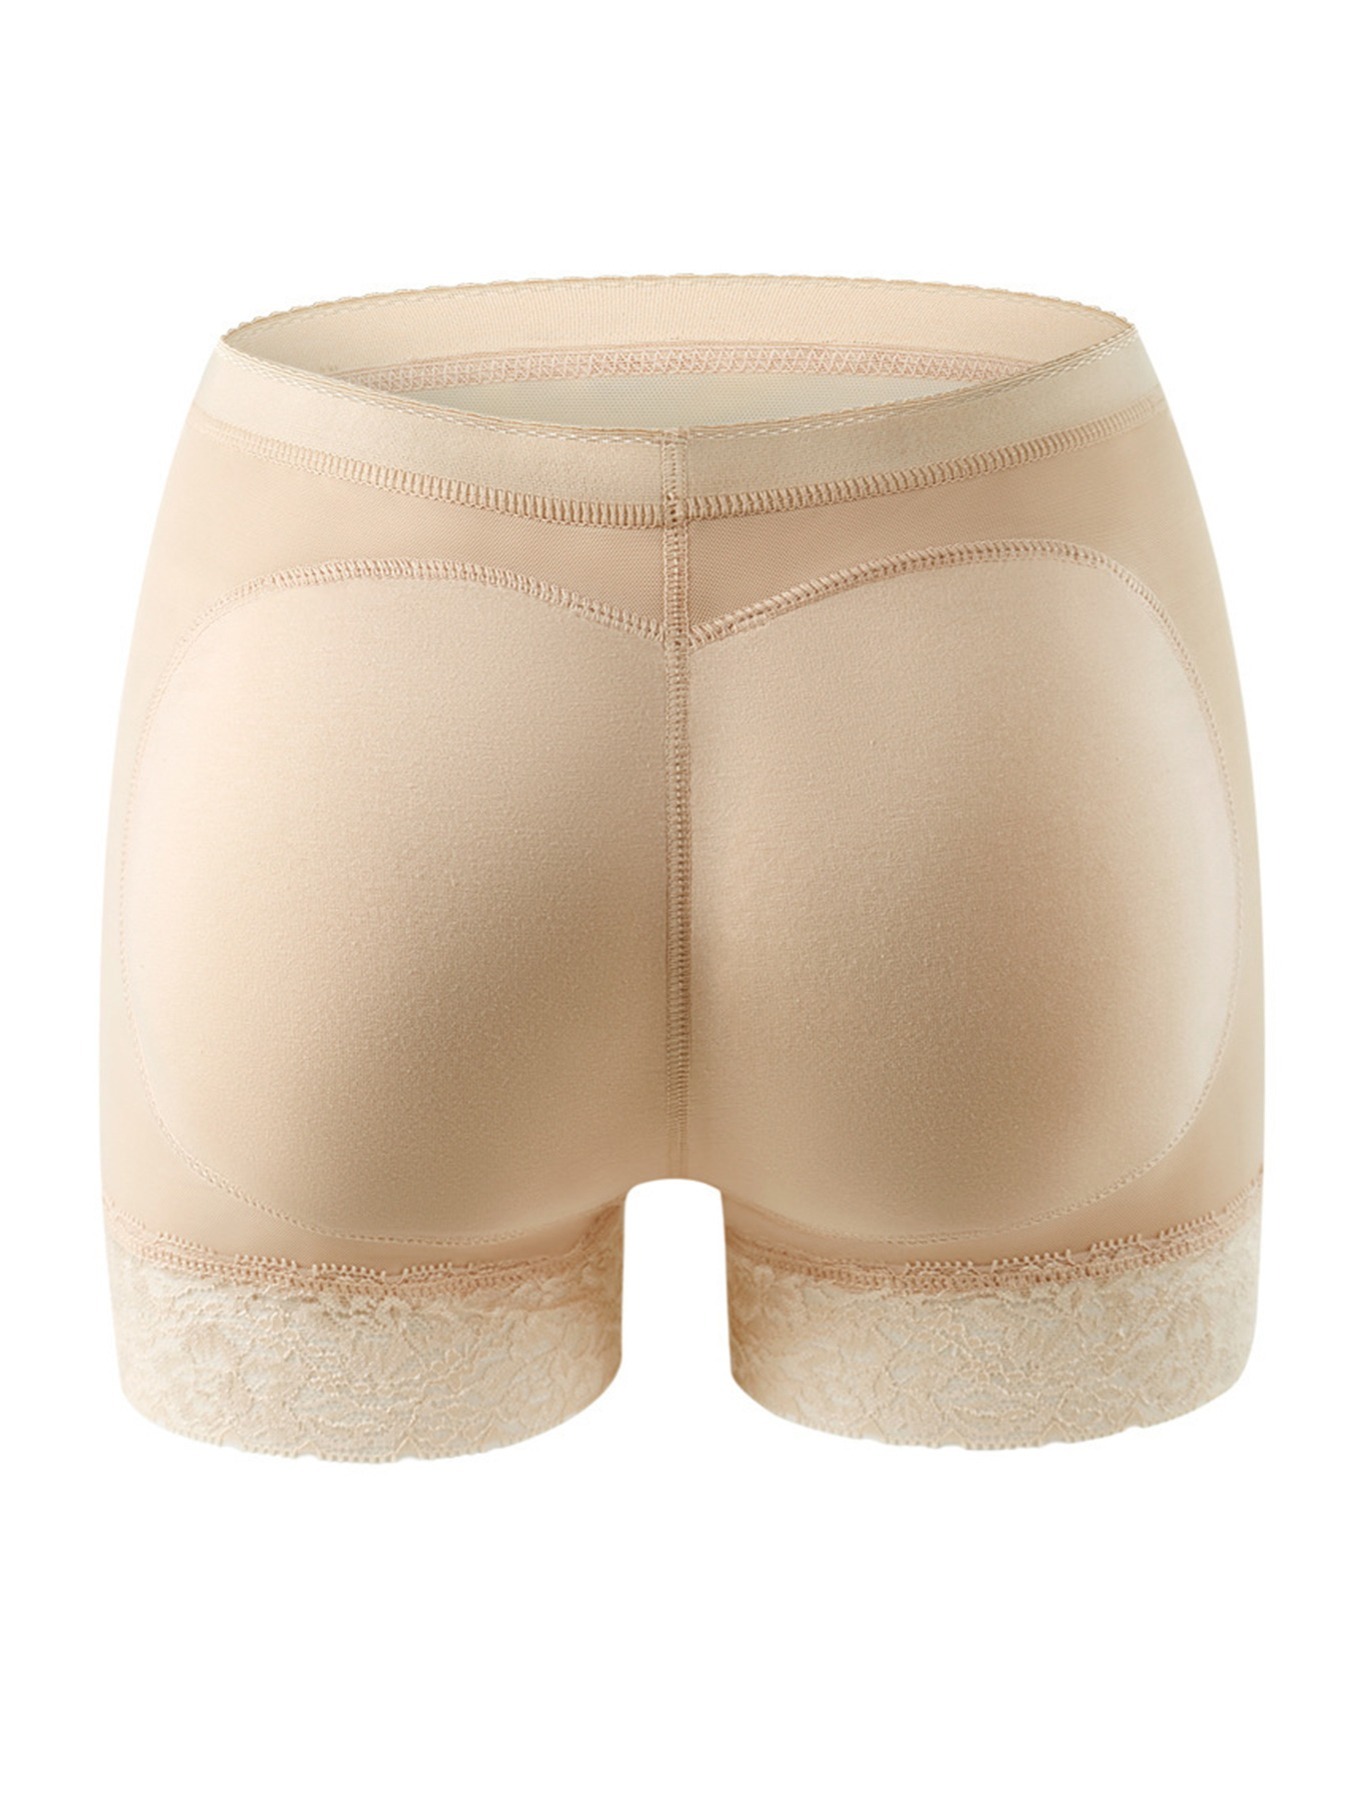 Women's Butt Lifter Shapewear Hip Pads Enhancer Panties Shaper